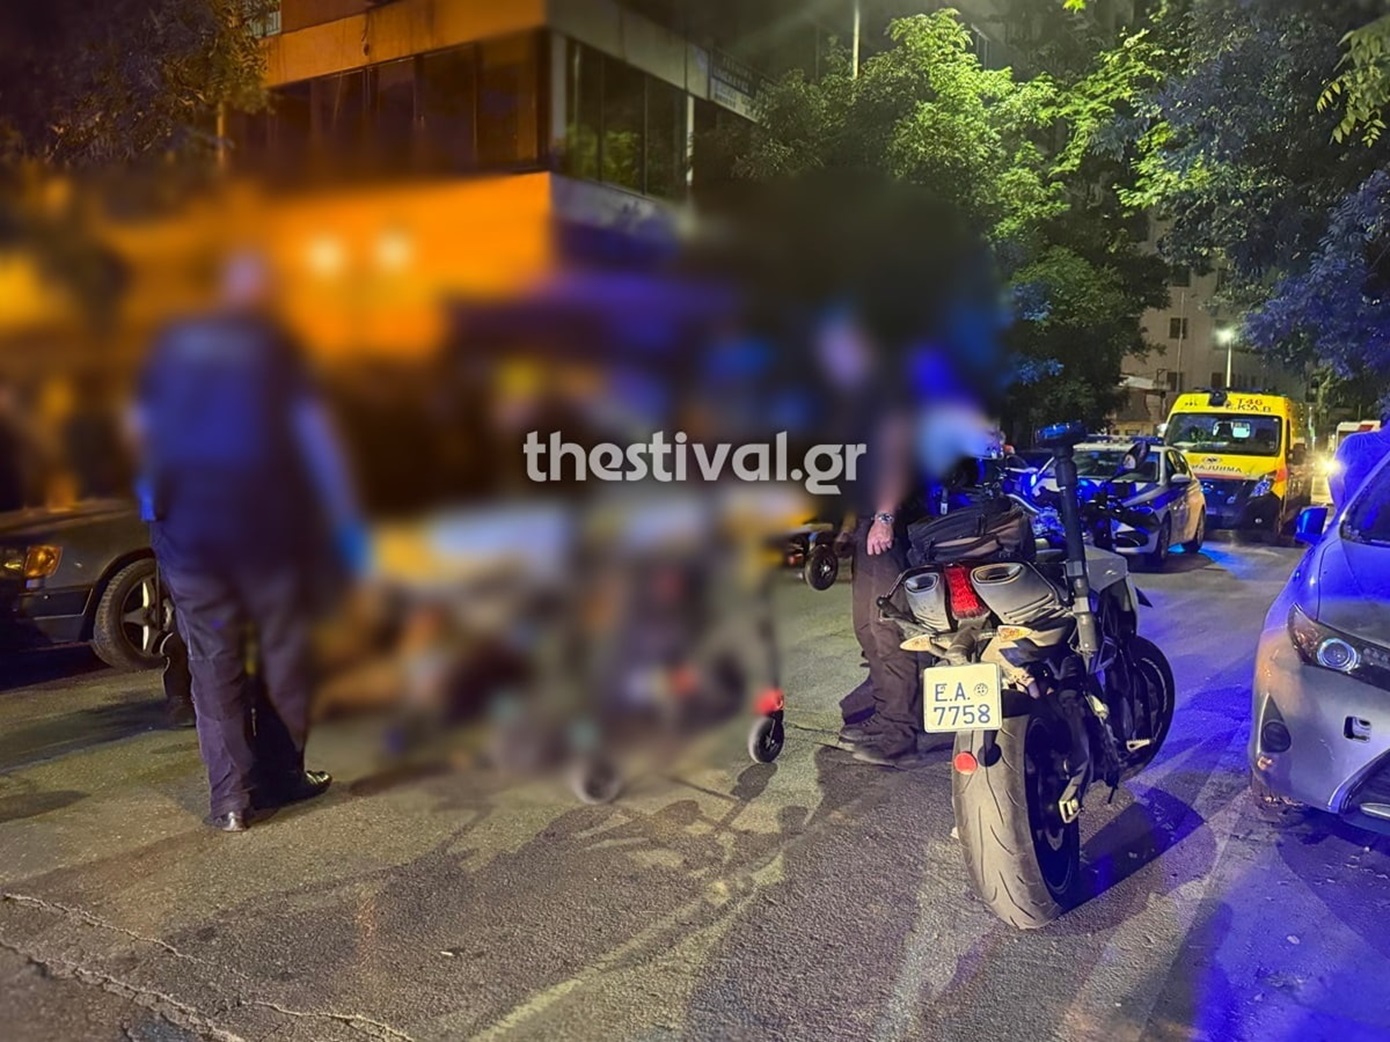 Βγήκαν τα μαχαίρια στη Θεσσαλονίκη σε αιματηρή συμπλοκή αλλοδαπών – Δύο σοβαρά τραυματίες